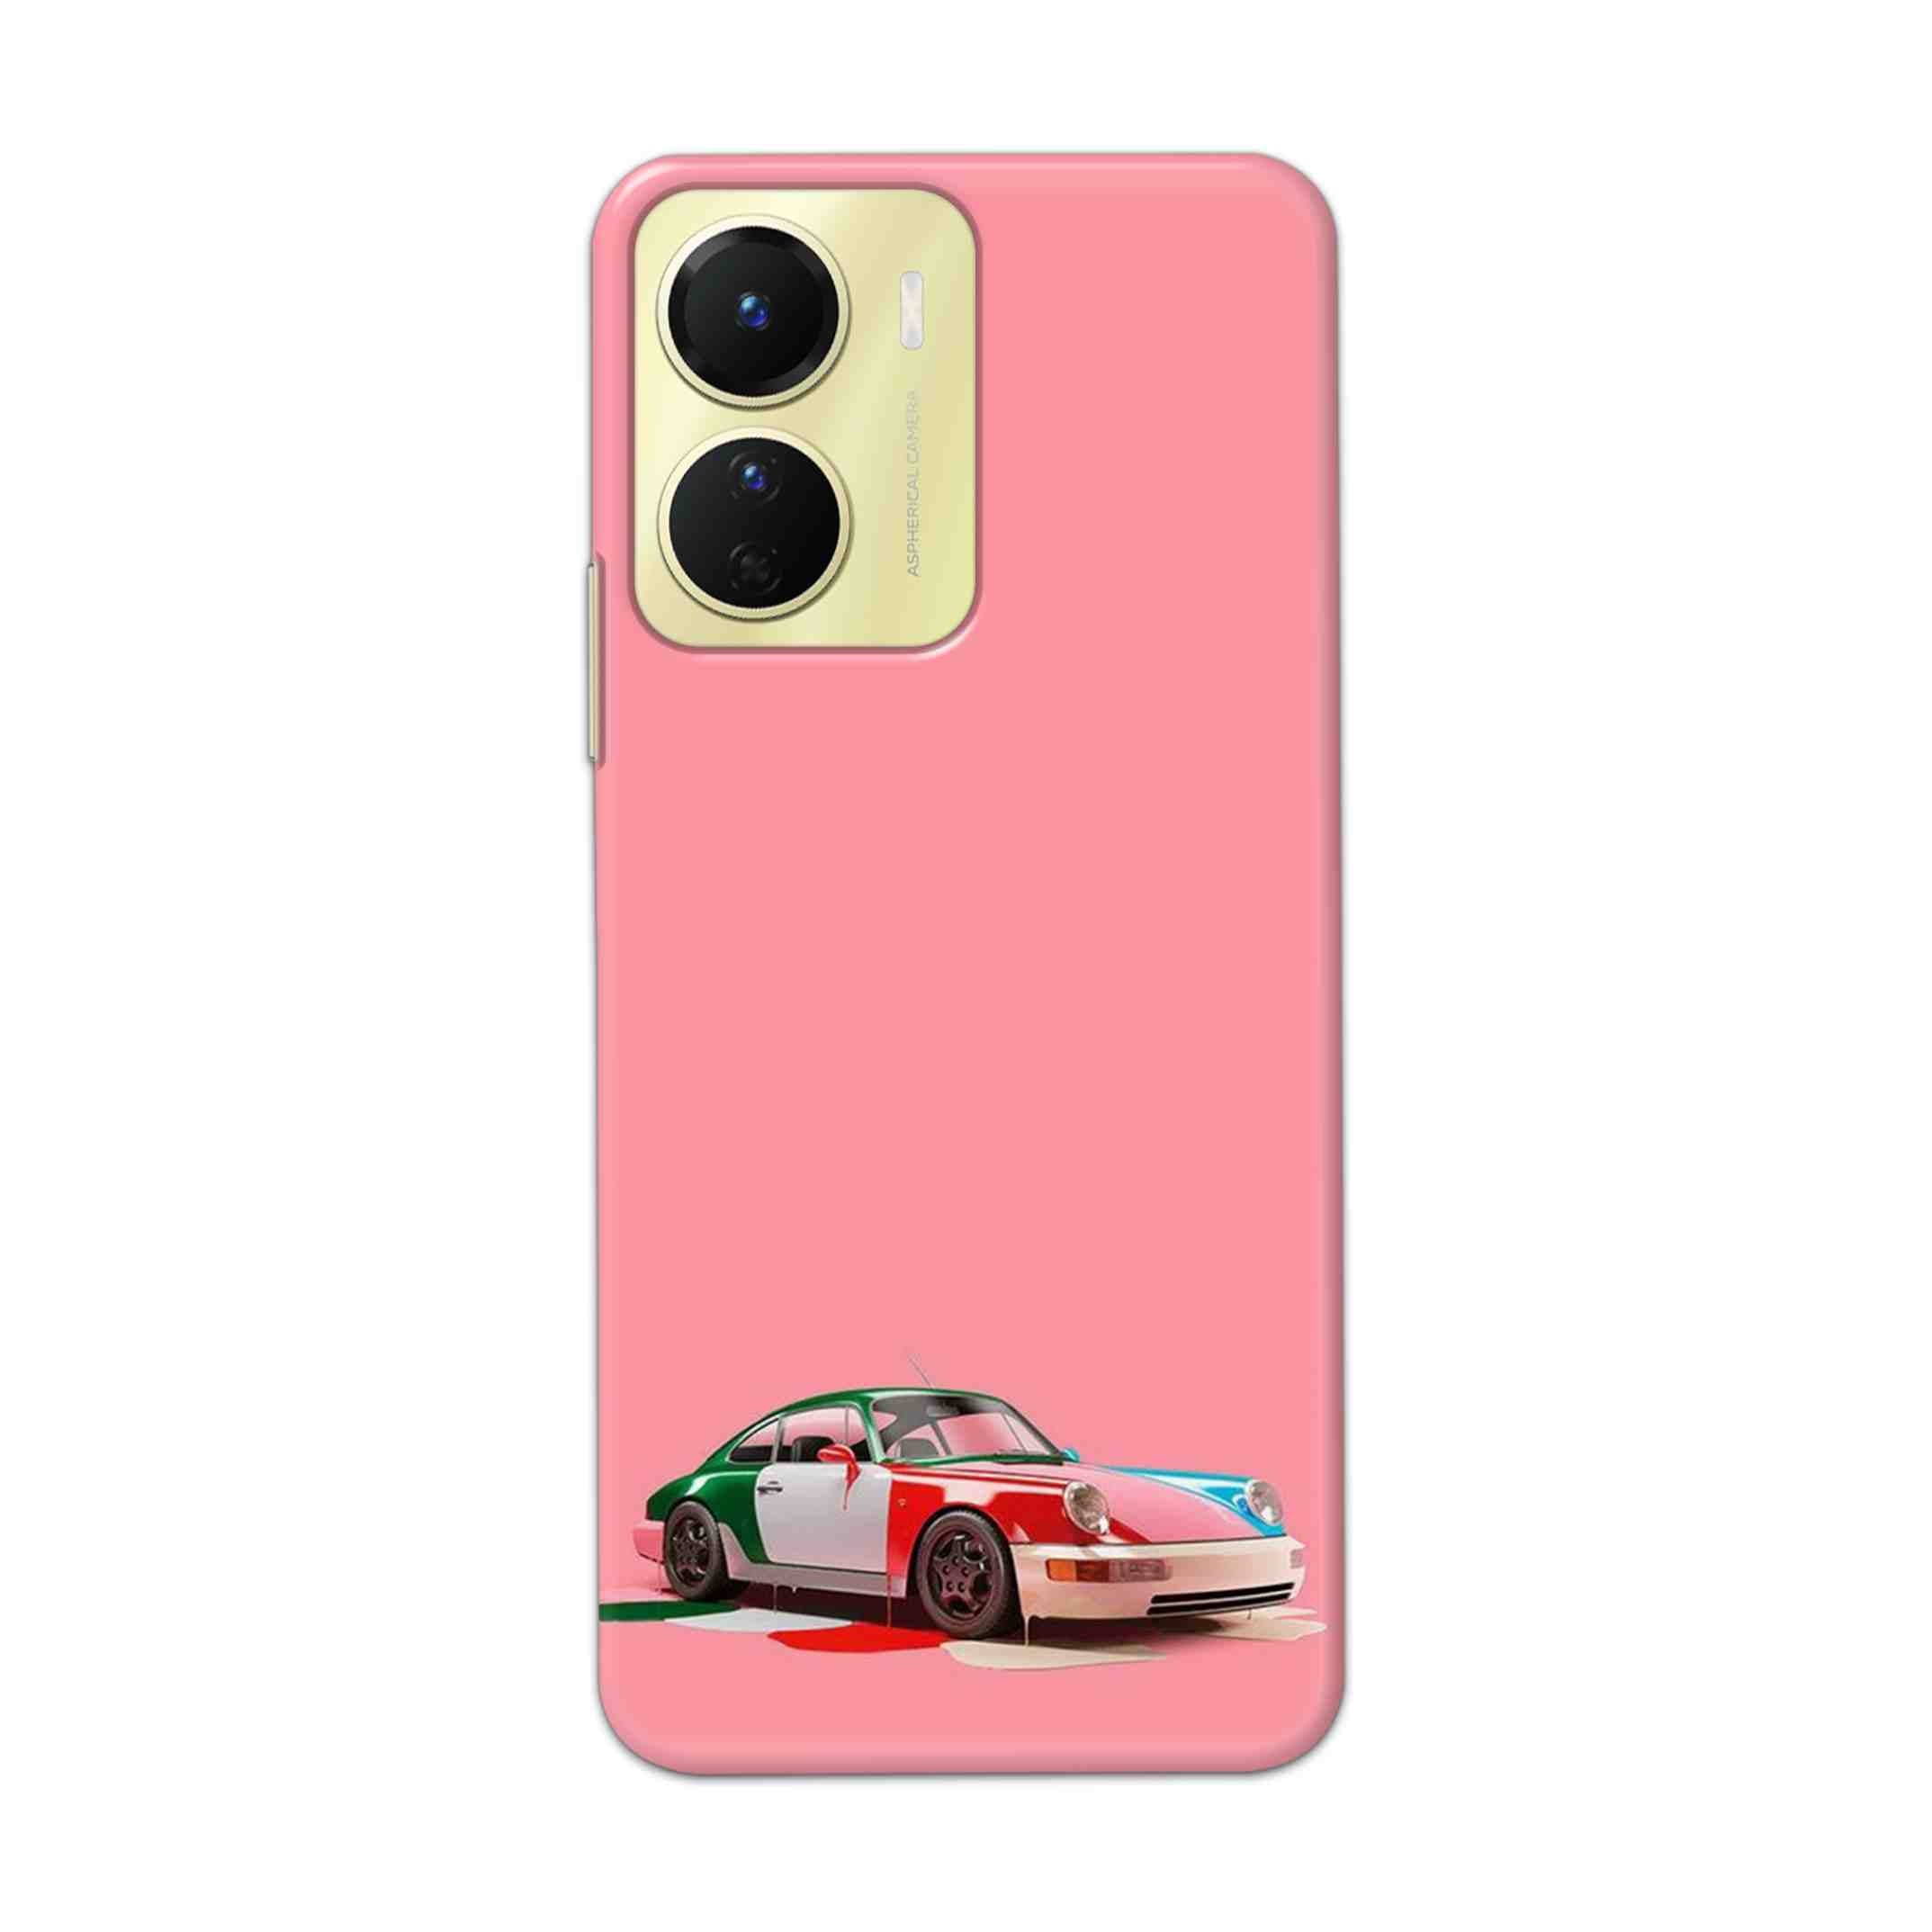 Buy Pink Porche Hard Back Mobile Phone Case Cover For Vivo Y16 Online